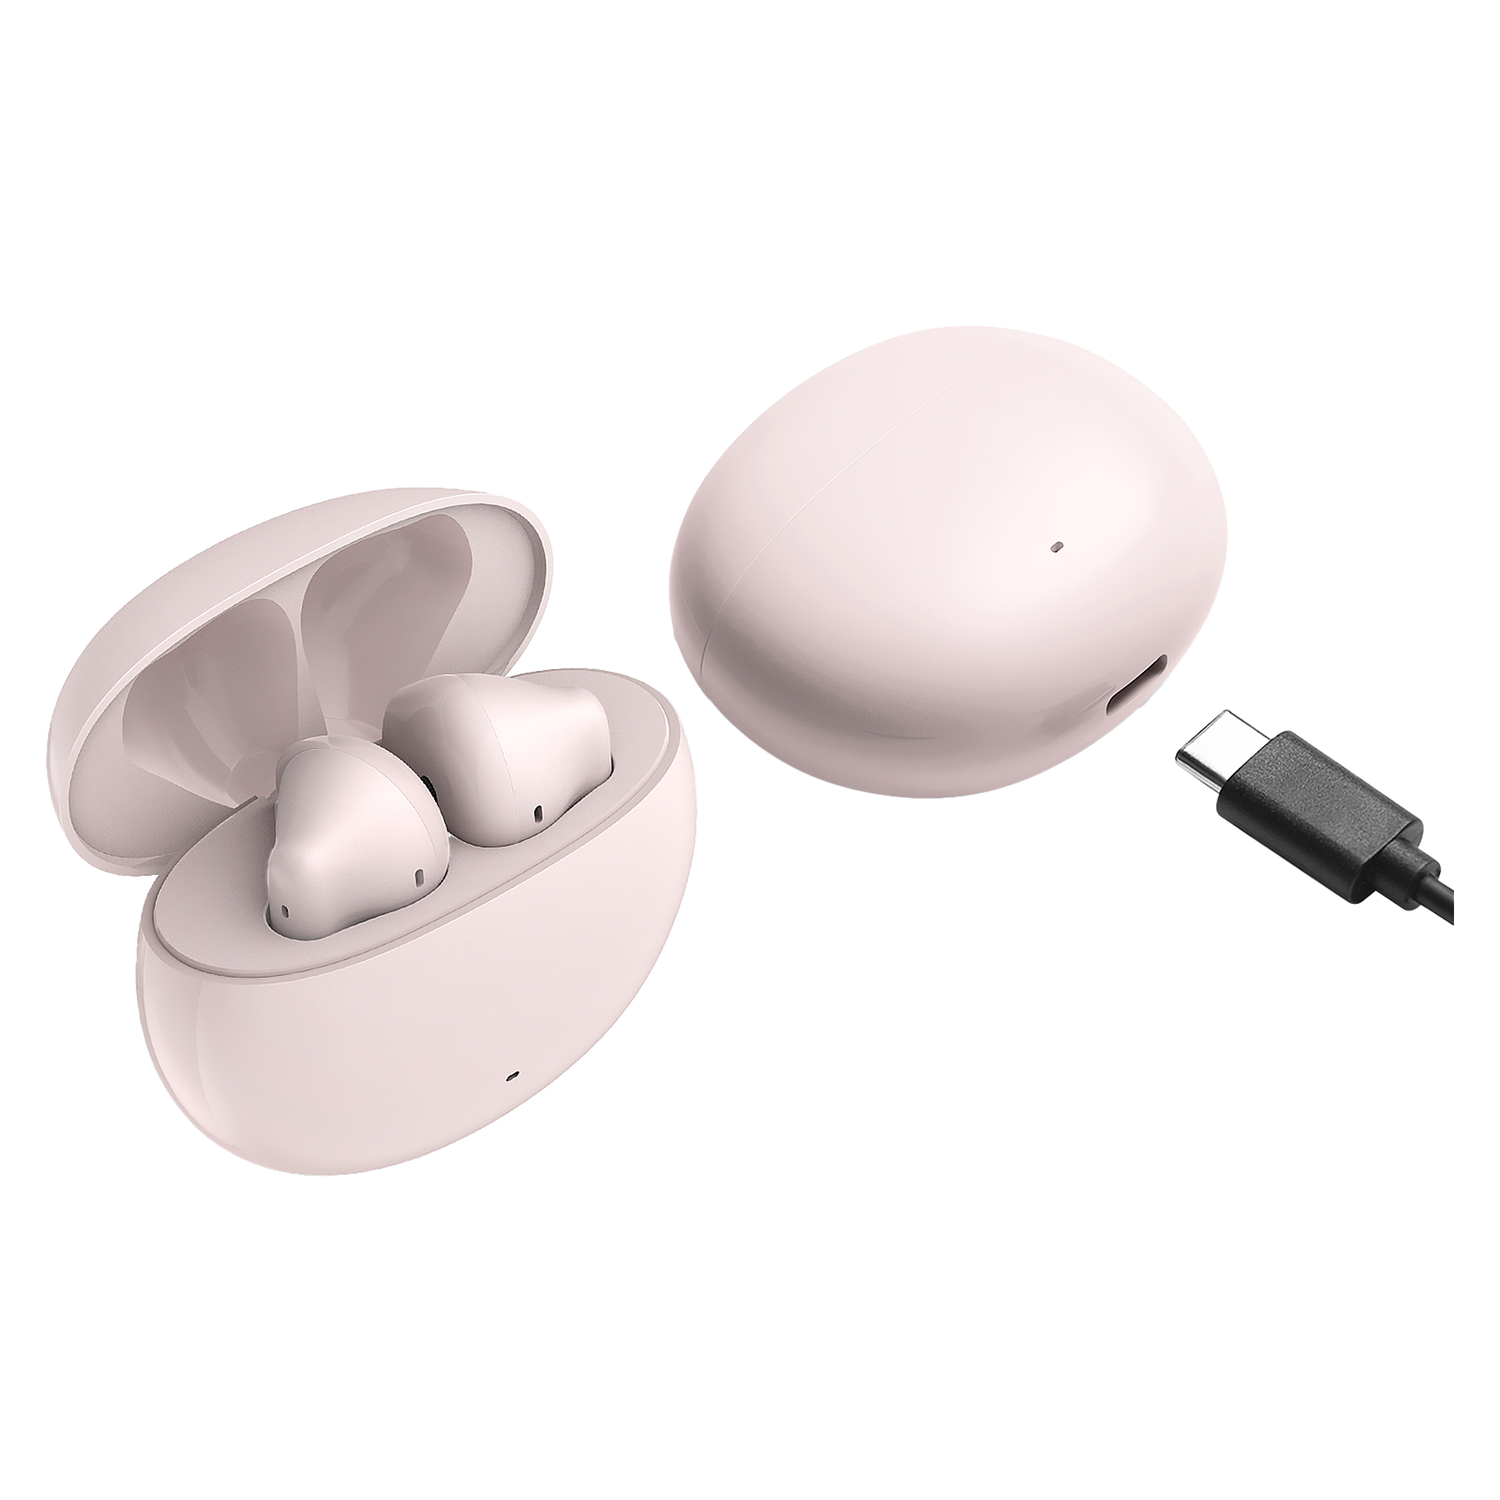 X2 True Wireless Earbuds Headphones